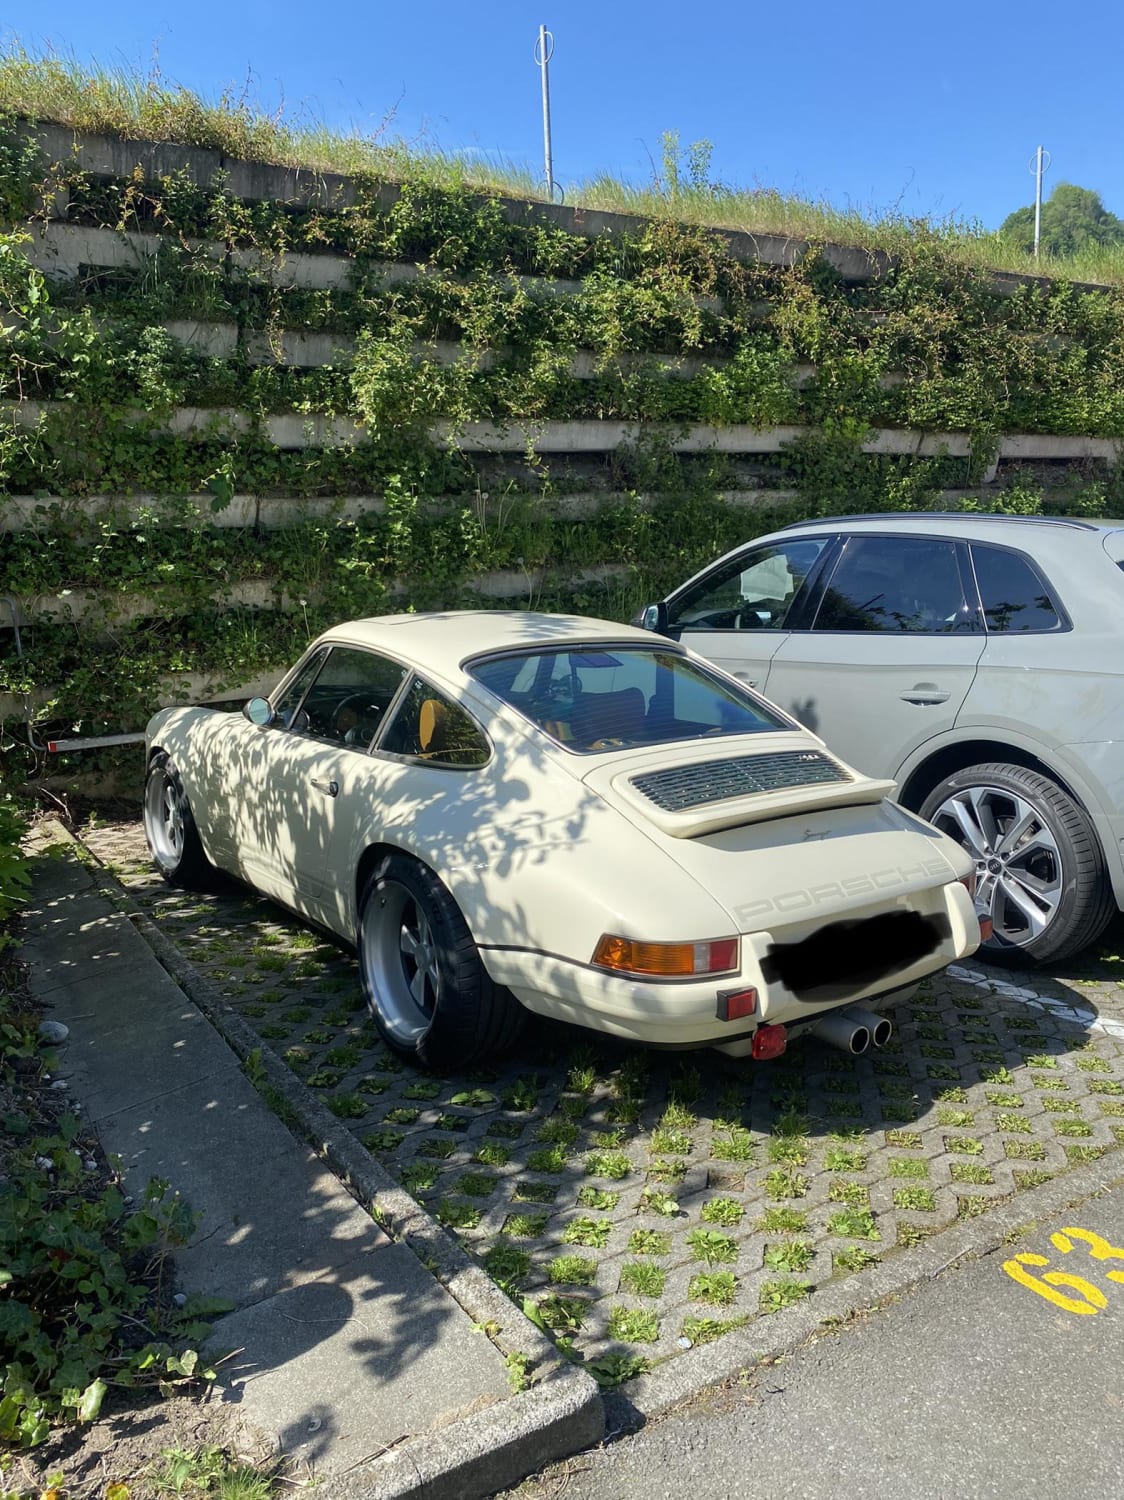 Singer Porsche spotted in Switzerland near Lucerne